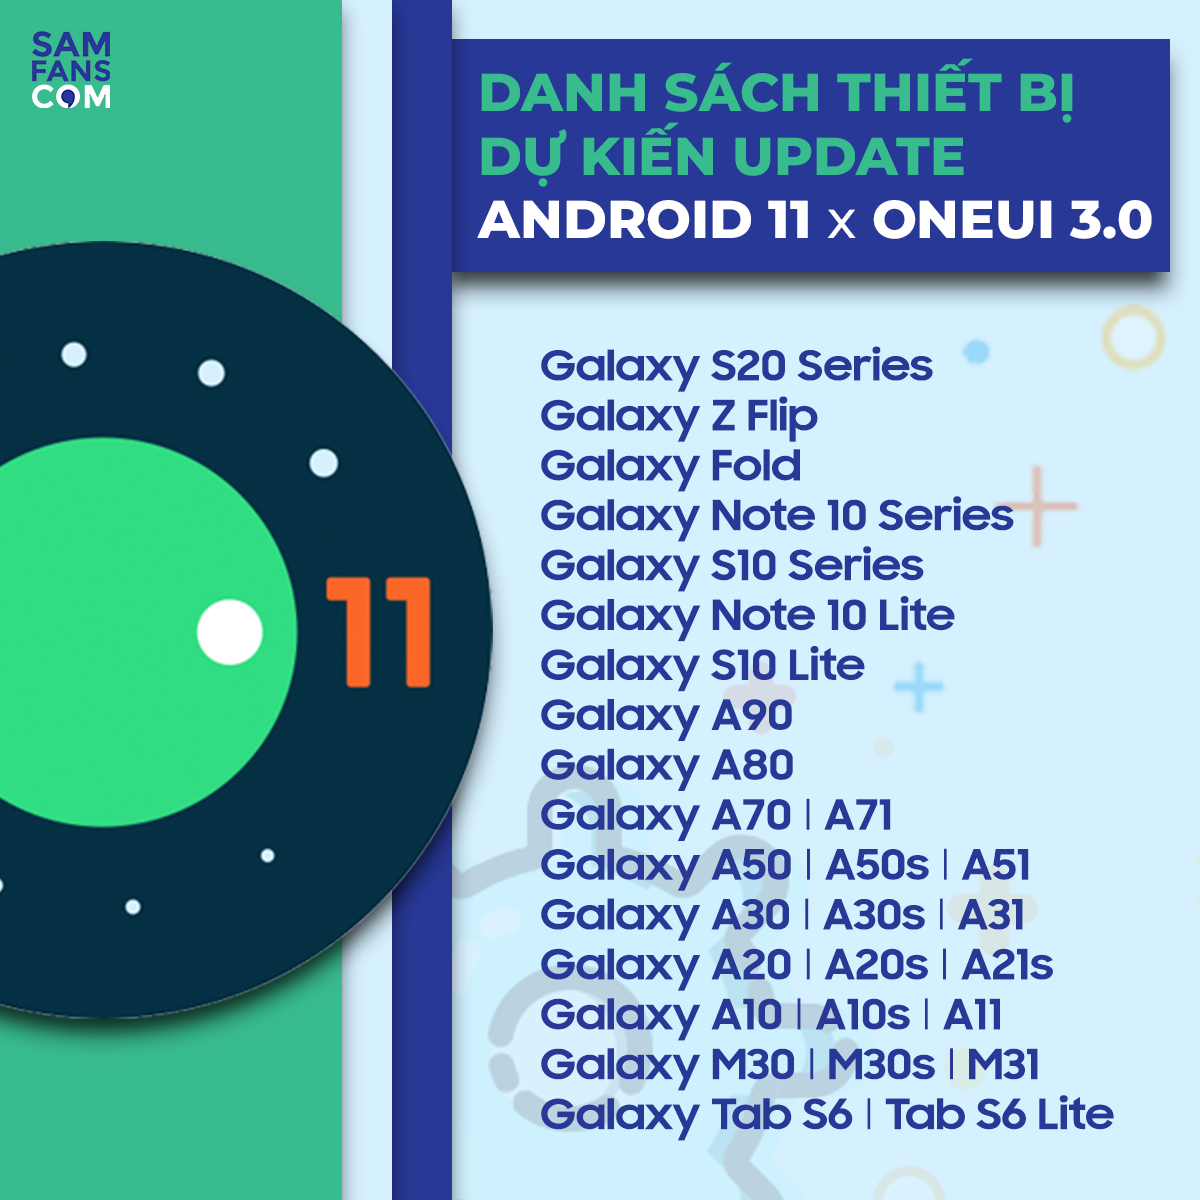 Danh sách các máy Samsung được cập nhật lên Android 11 One UI 3.0 - 1590138251